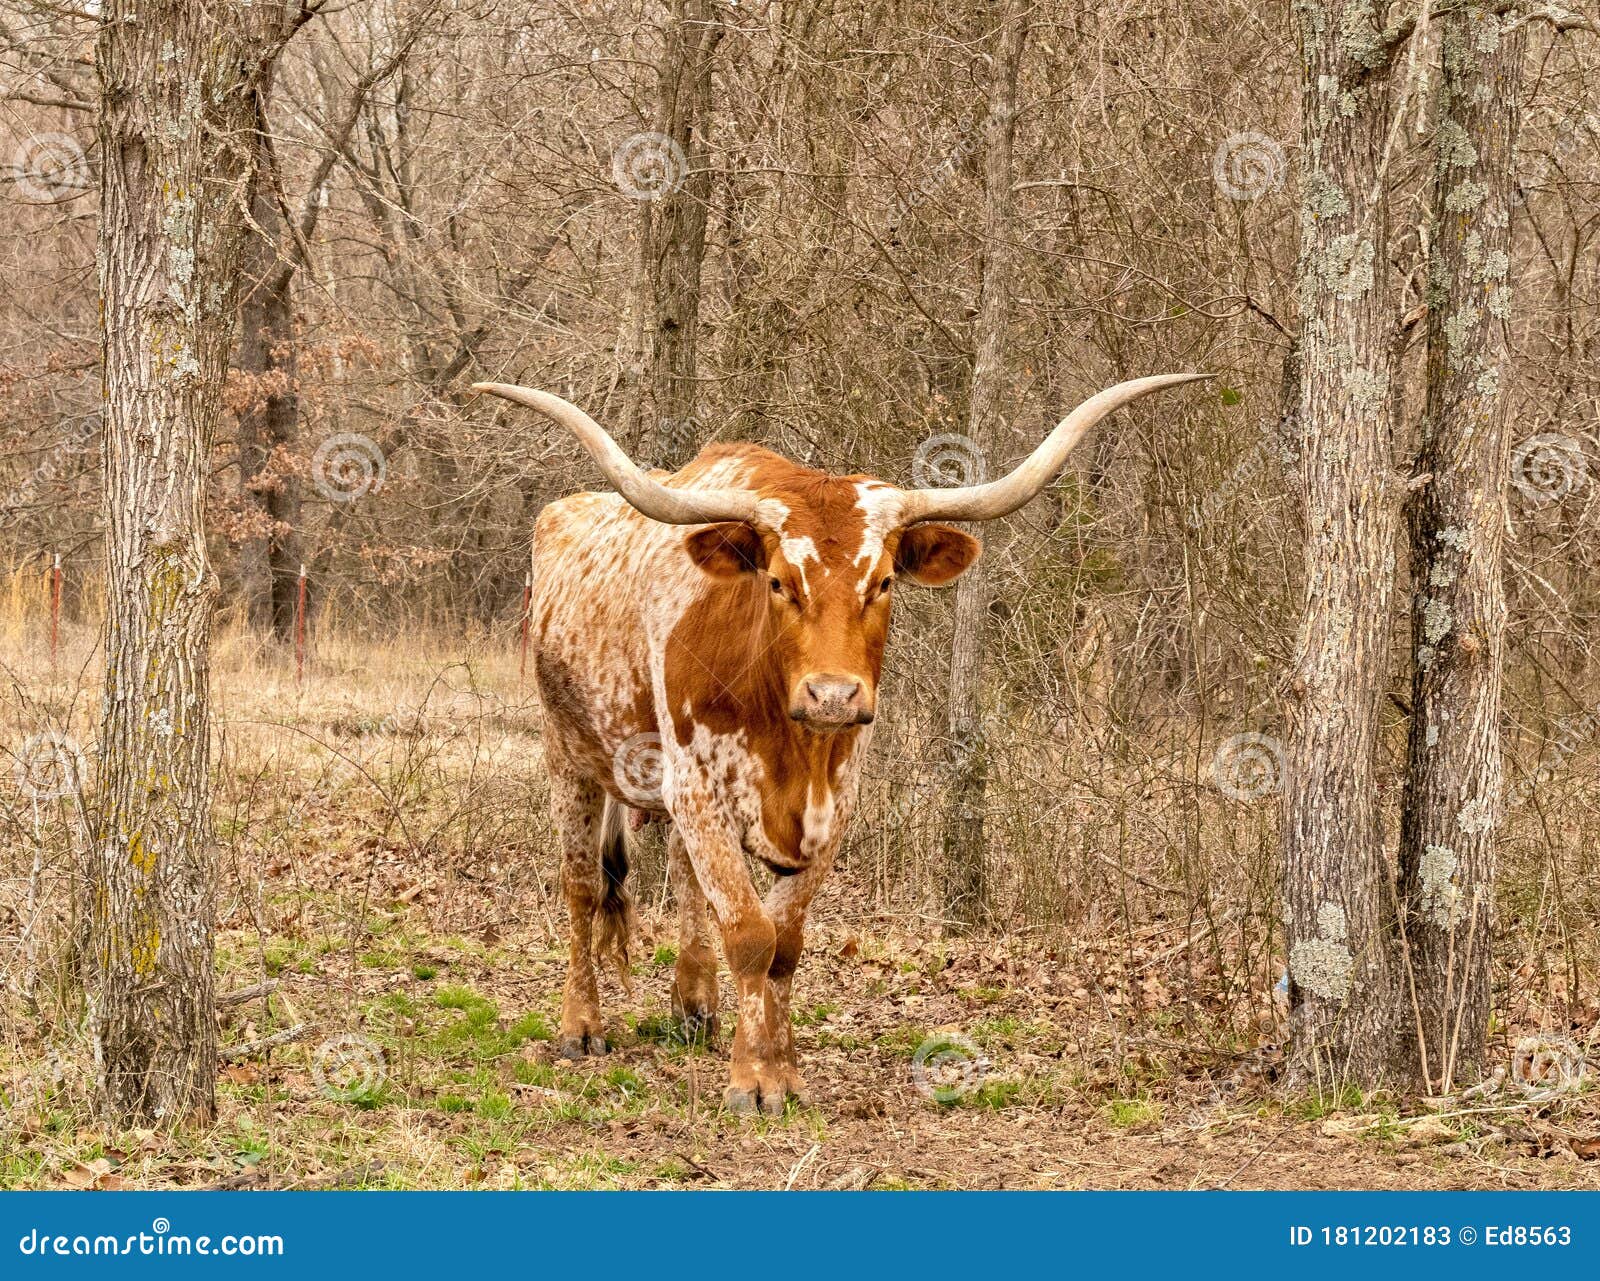 Vaca Bovina De Vacuno De Longhorn De Texas Paradas Entre árboles En Pastos  Imagen de archivo - Imagen de animal, tejas: 181202183